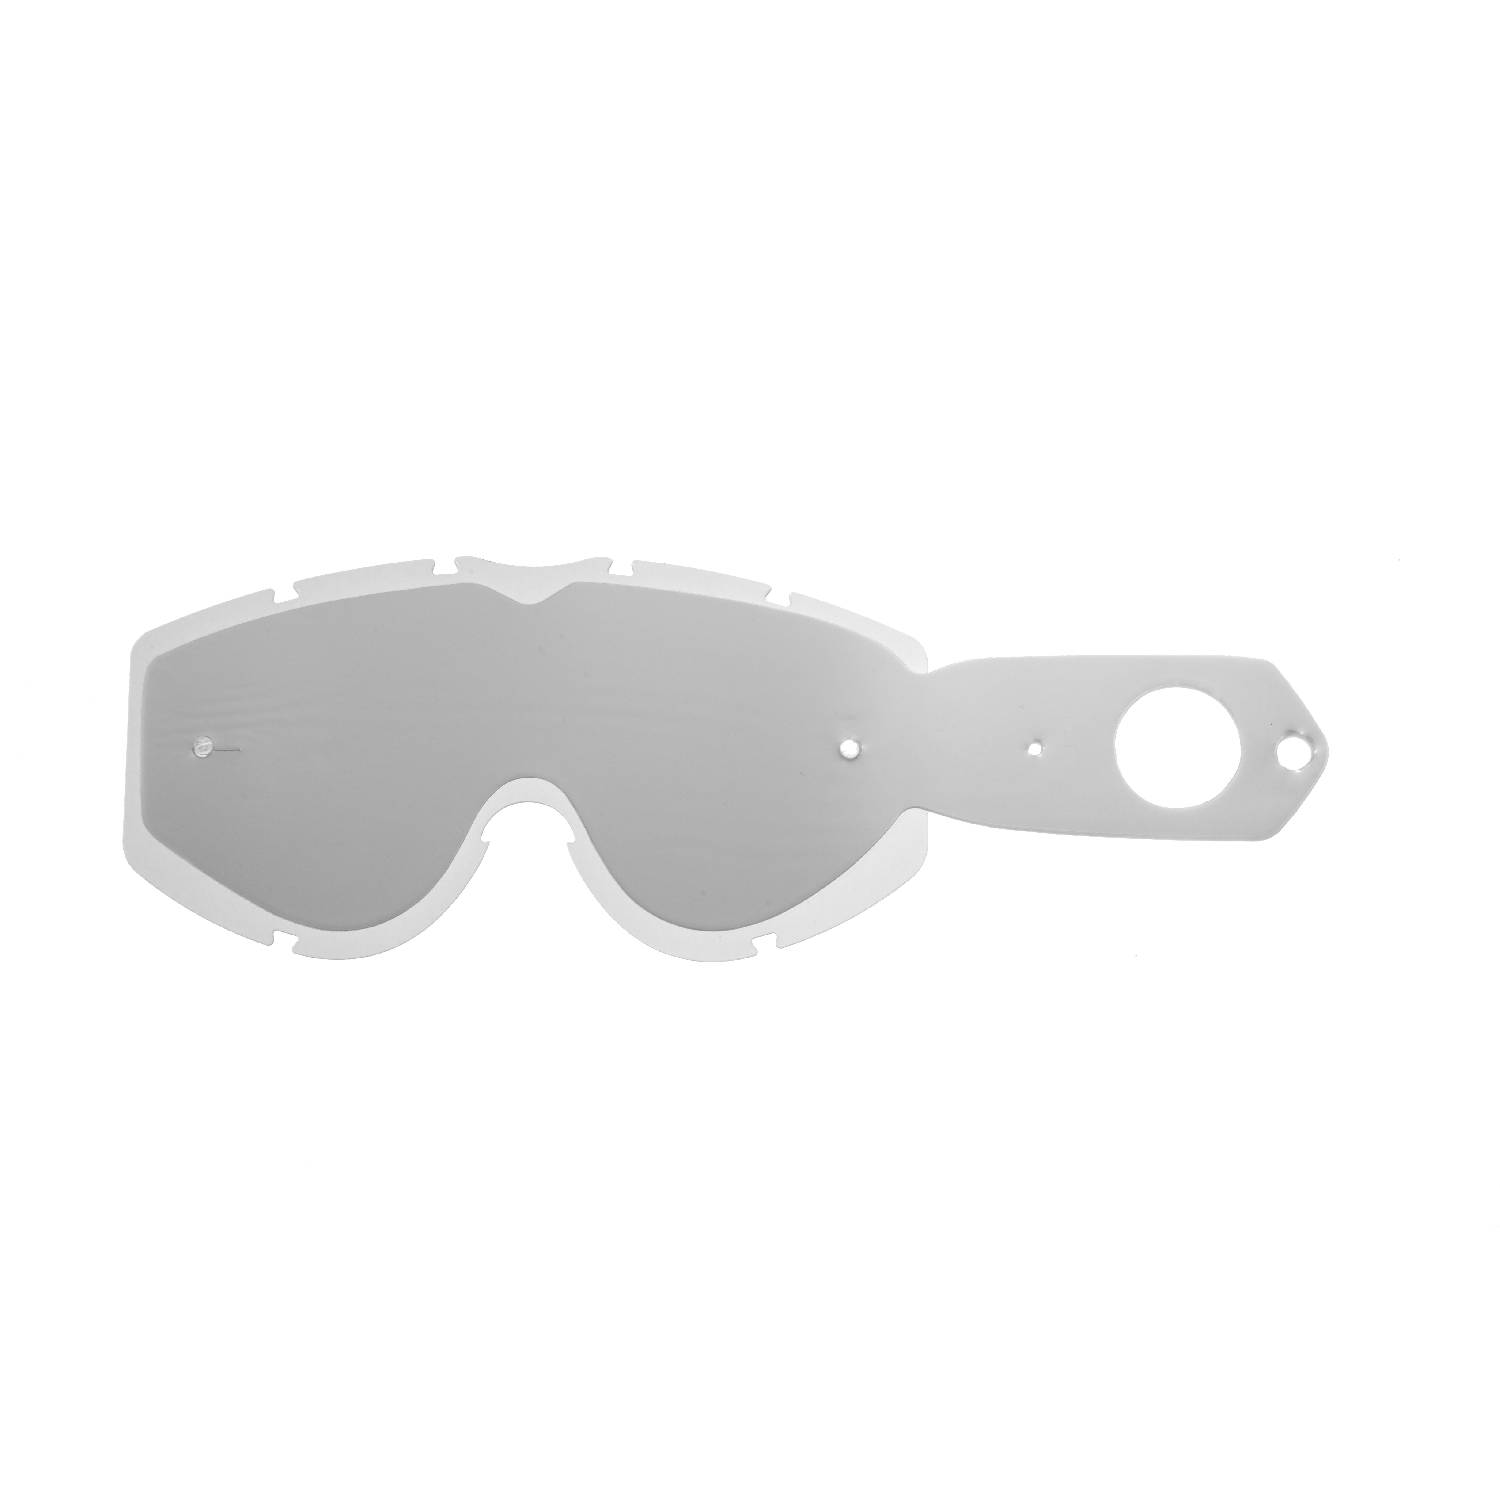 Lente trasparente + 10 Strappi (combo) compatibile per occhiale/maschera Progrip 3200 / 3450  / 3400  / 3201 i / 3204 / 3301